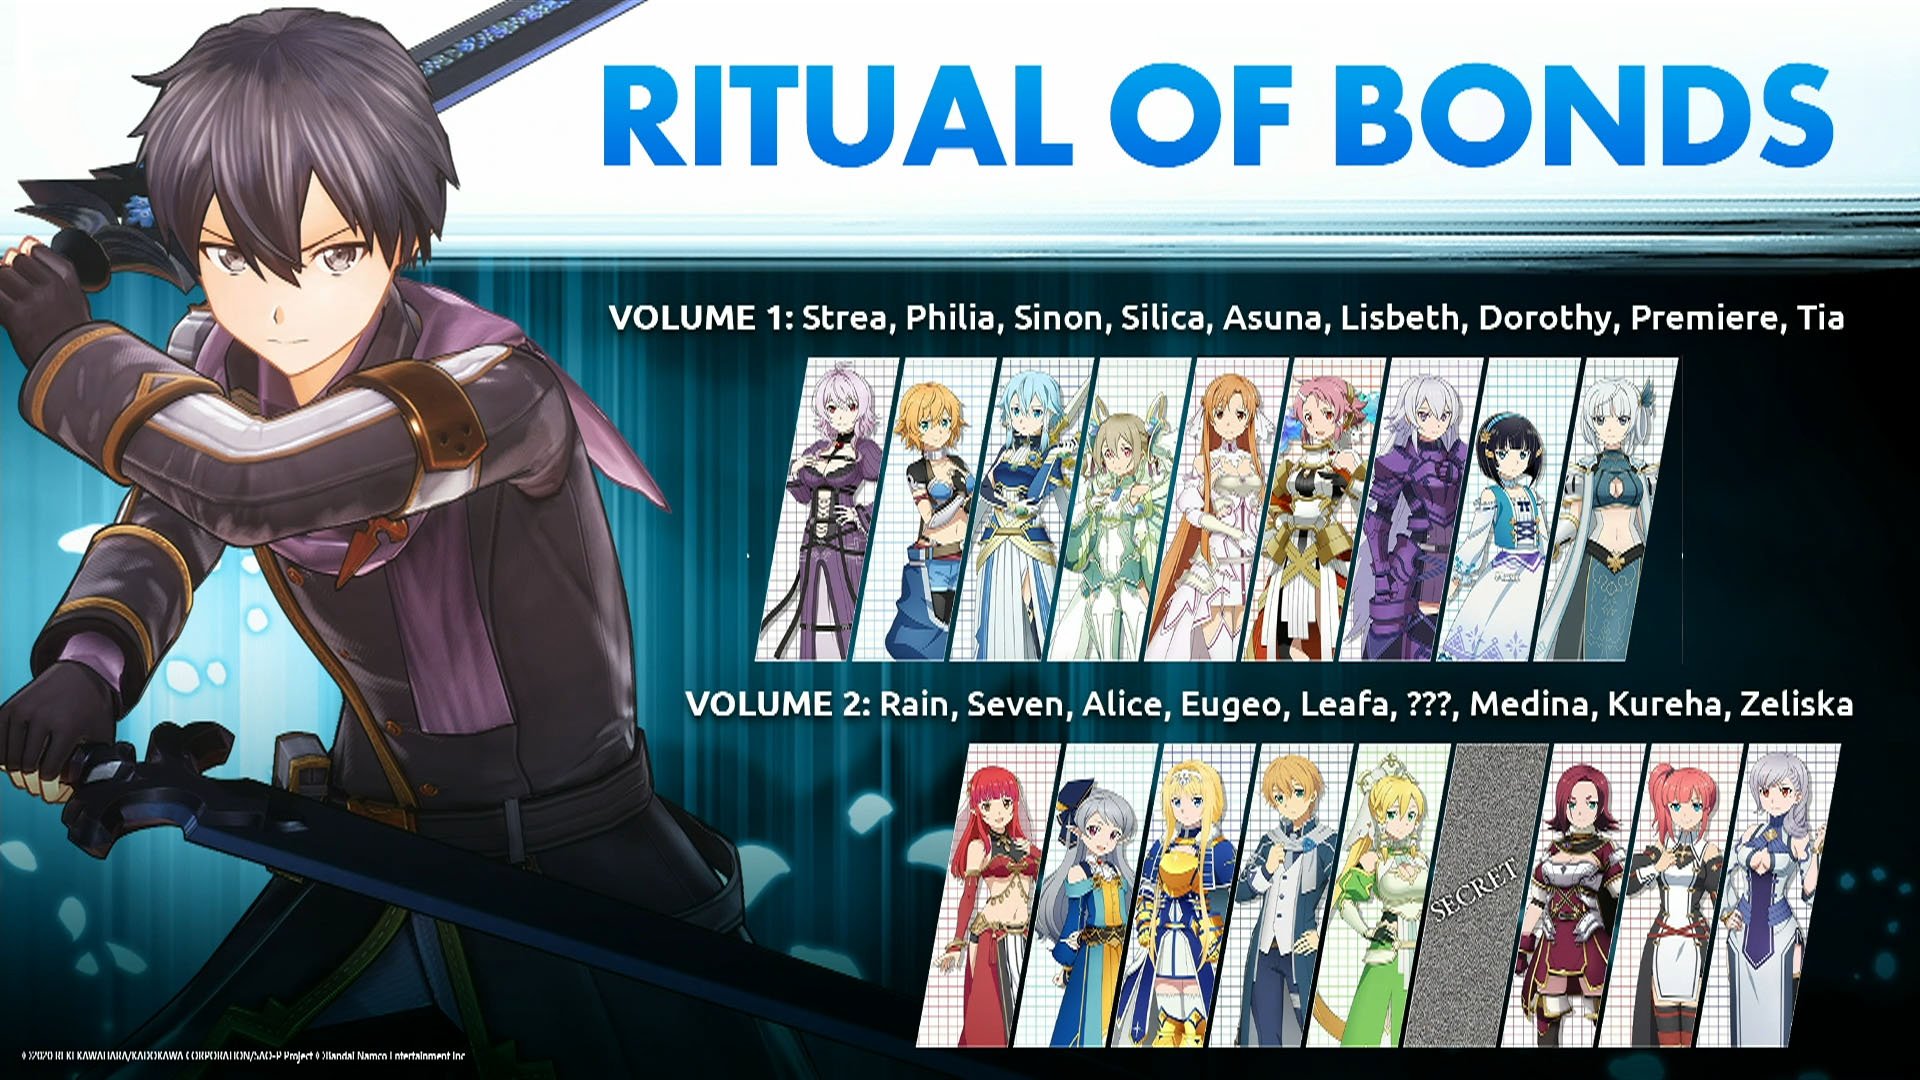 A primeira temporada do anime Sword Art Online resumida em 5